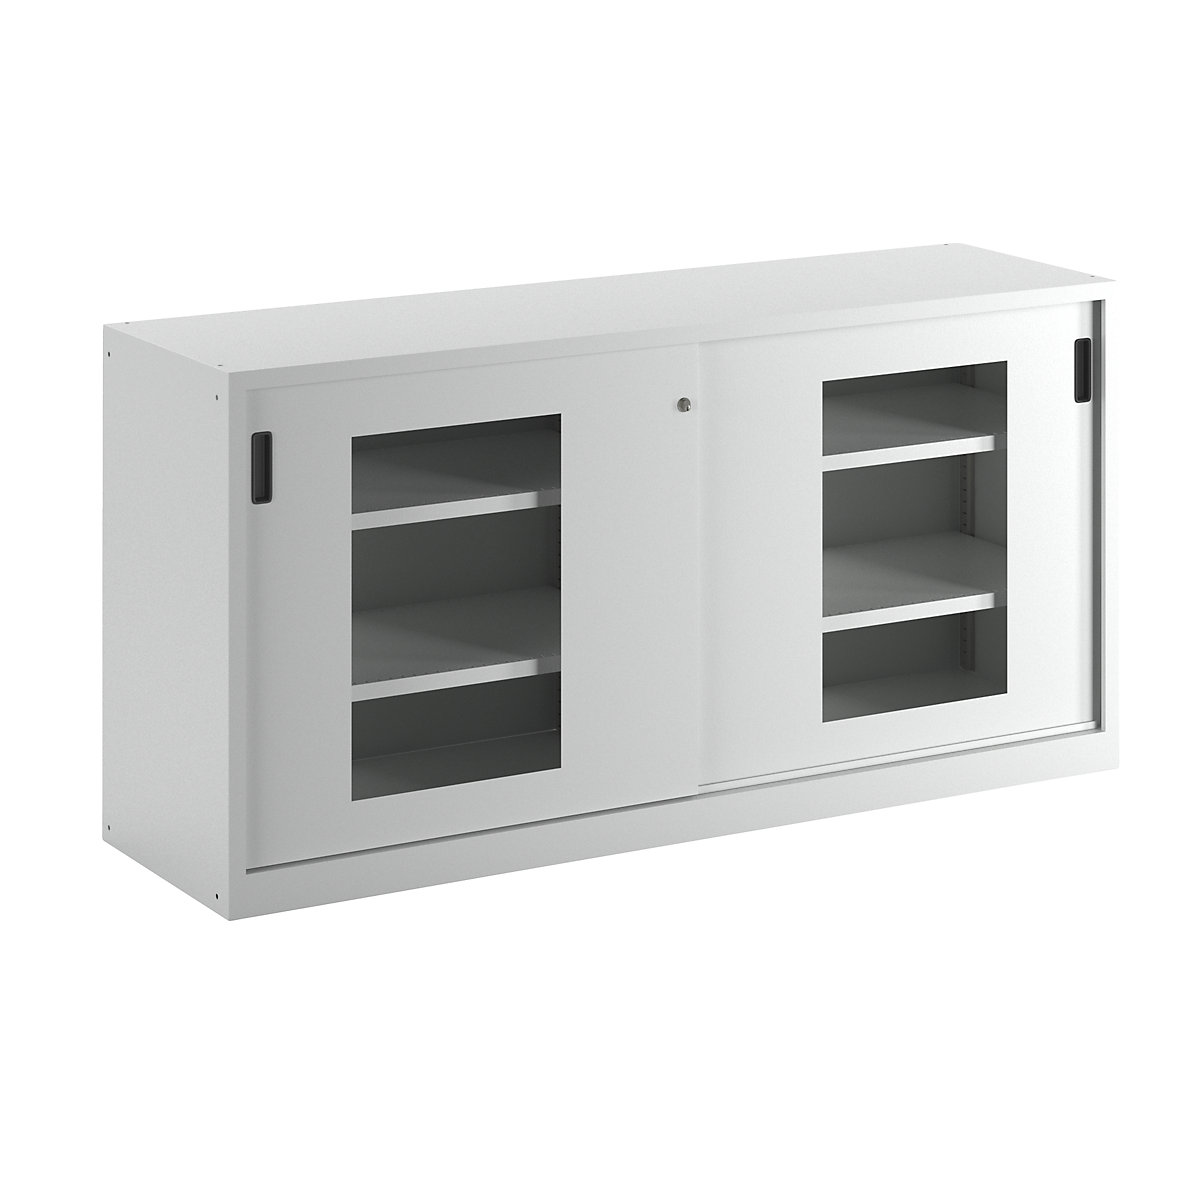 Sliding door cupboard with vision panel doors – LISTA, 4 shelves, light grey-2